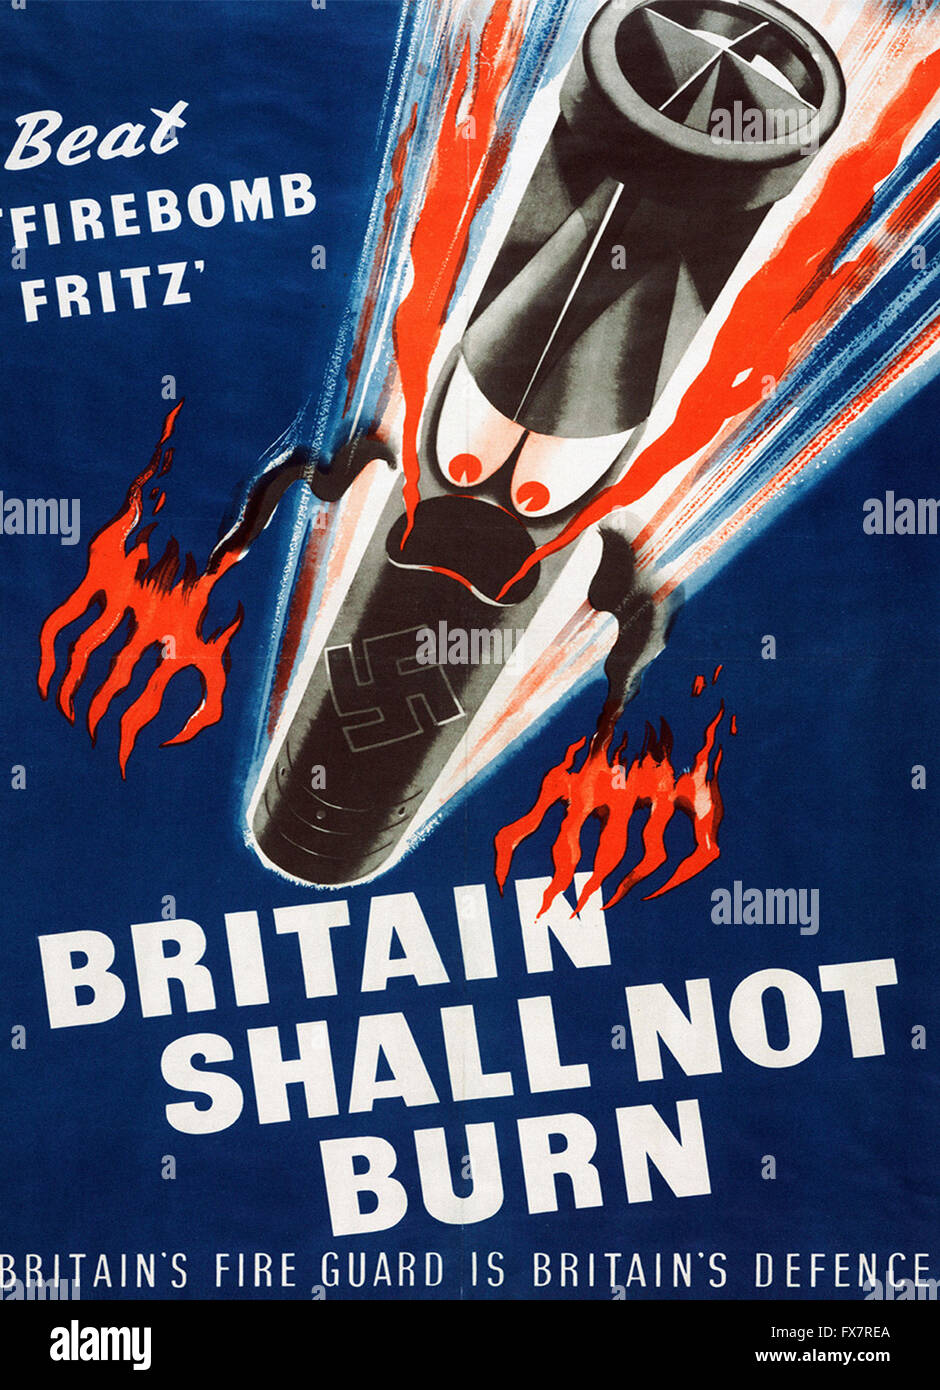 La Grande-Bretagne ne doit pas brûler - World War II - Affiche de propagande britannique Banque D'Images